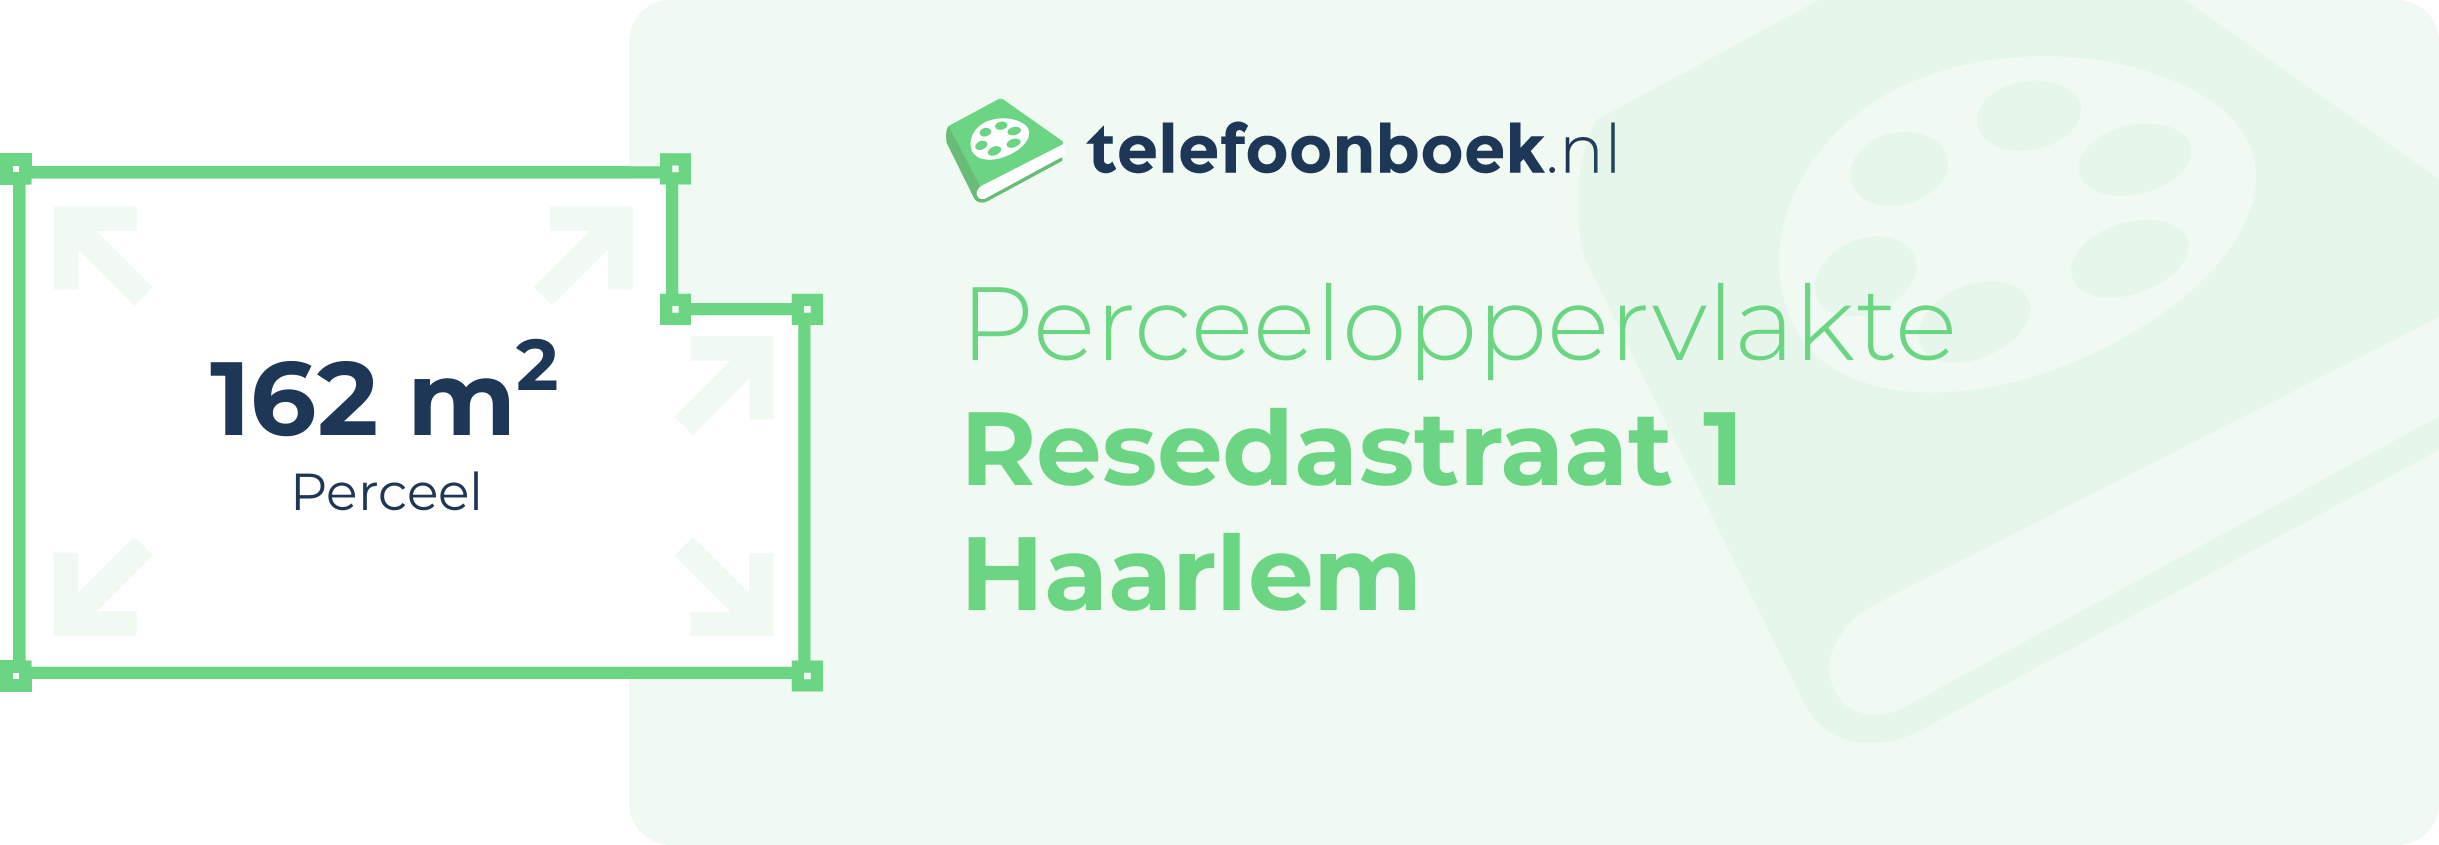 Perceeloppervlakte Resedastraat 1 Haarlem